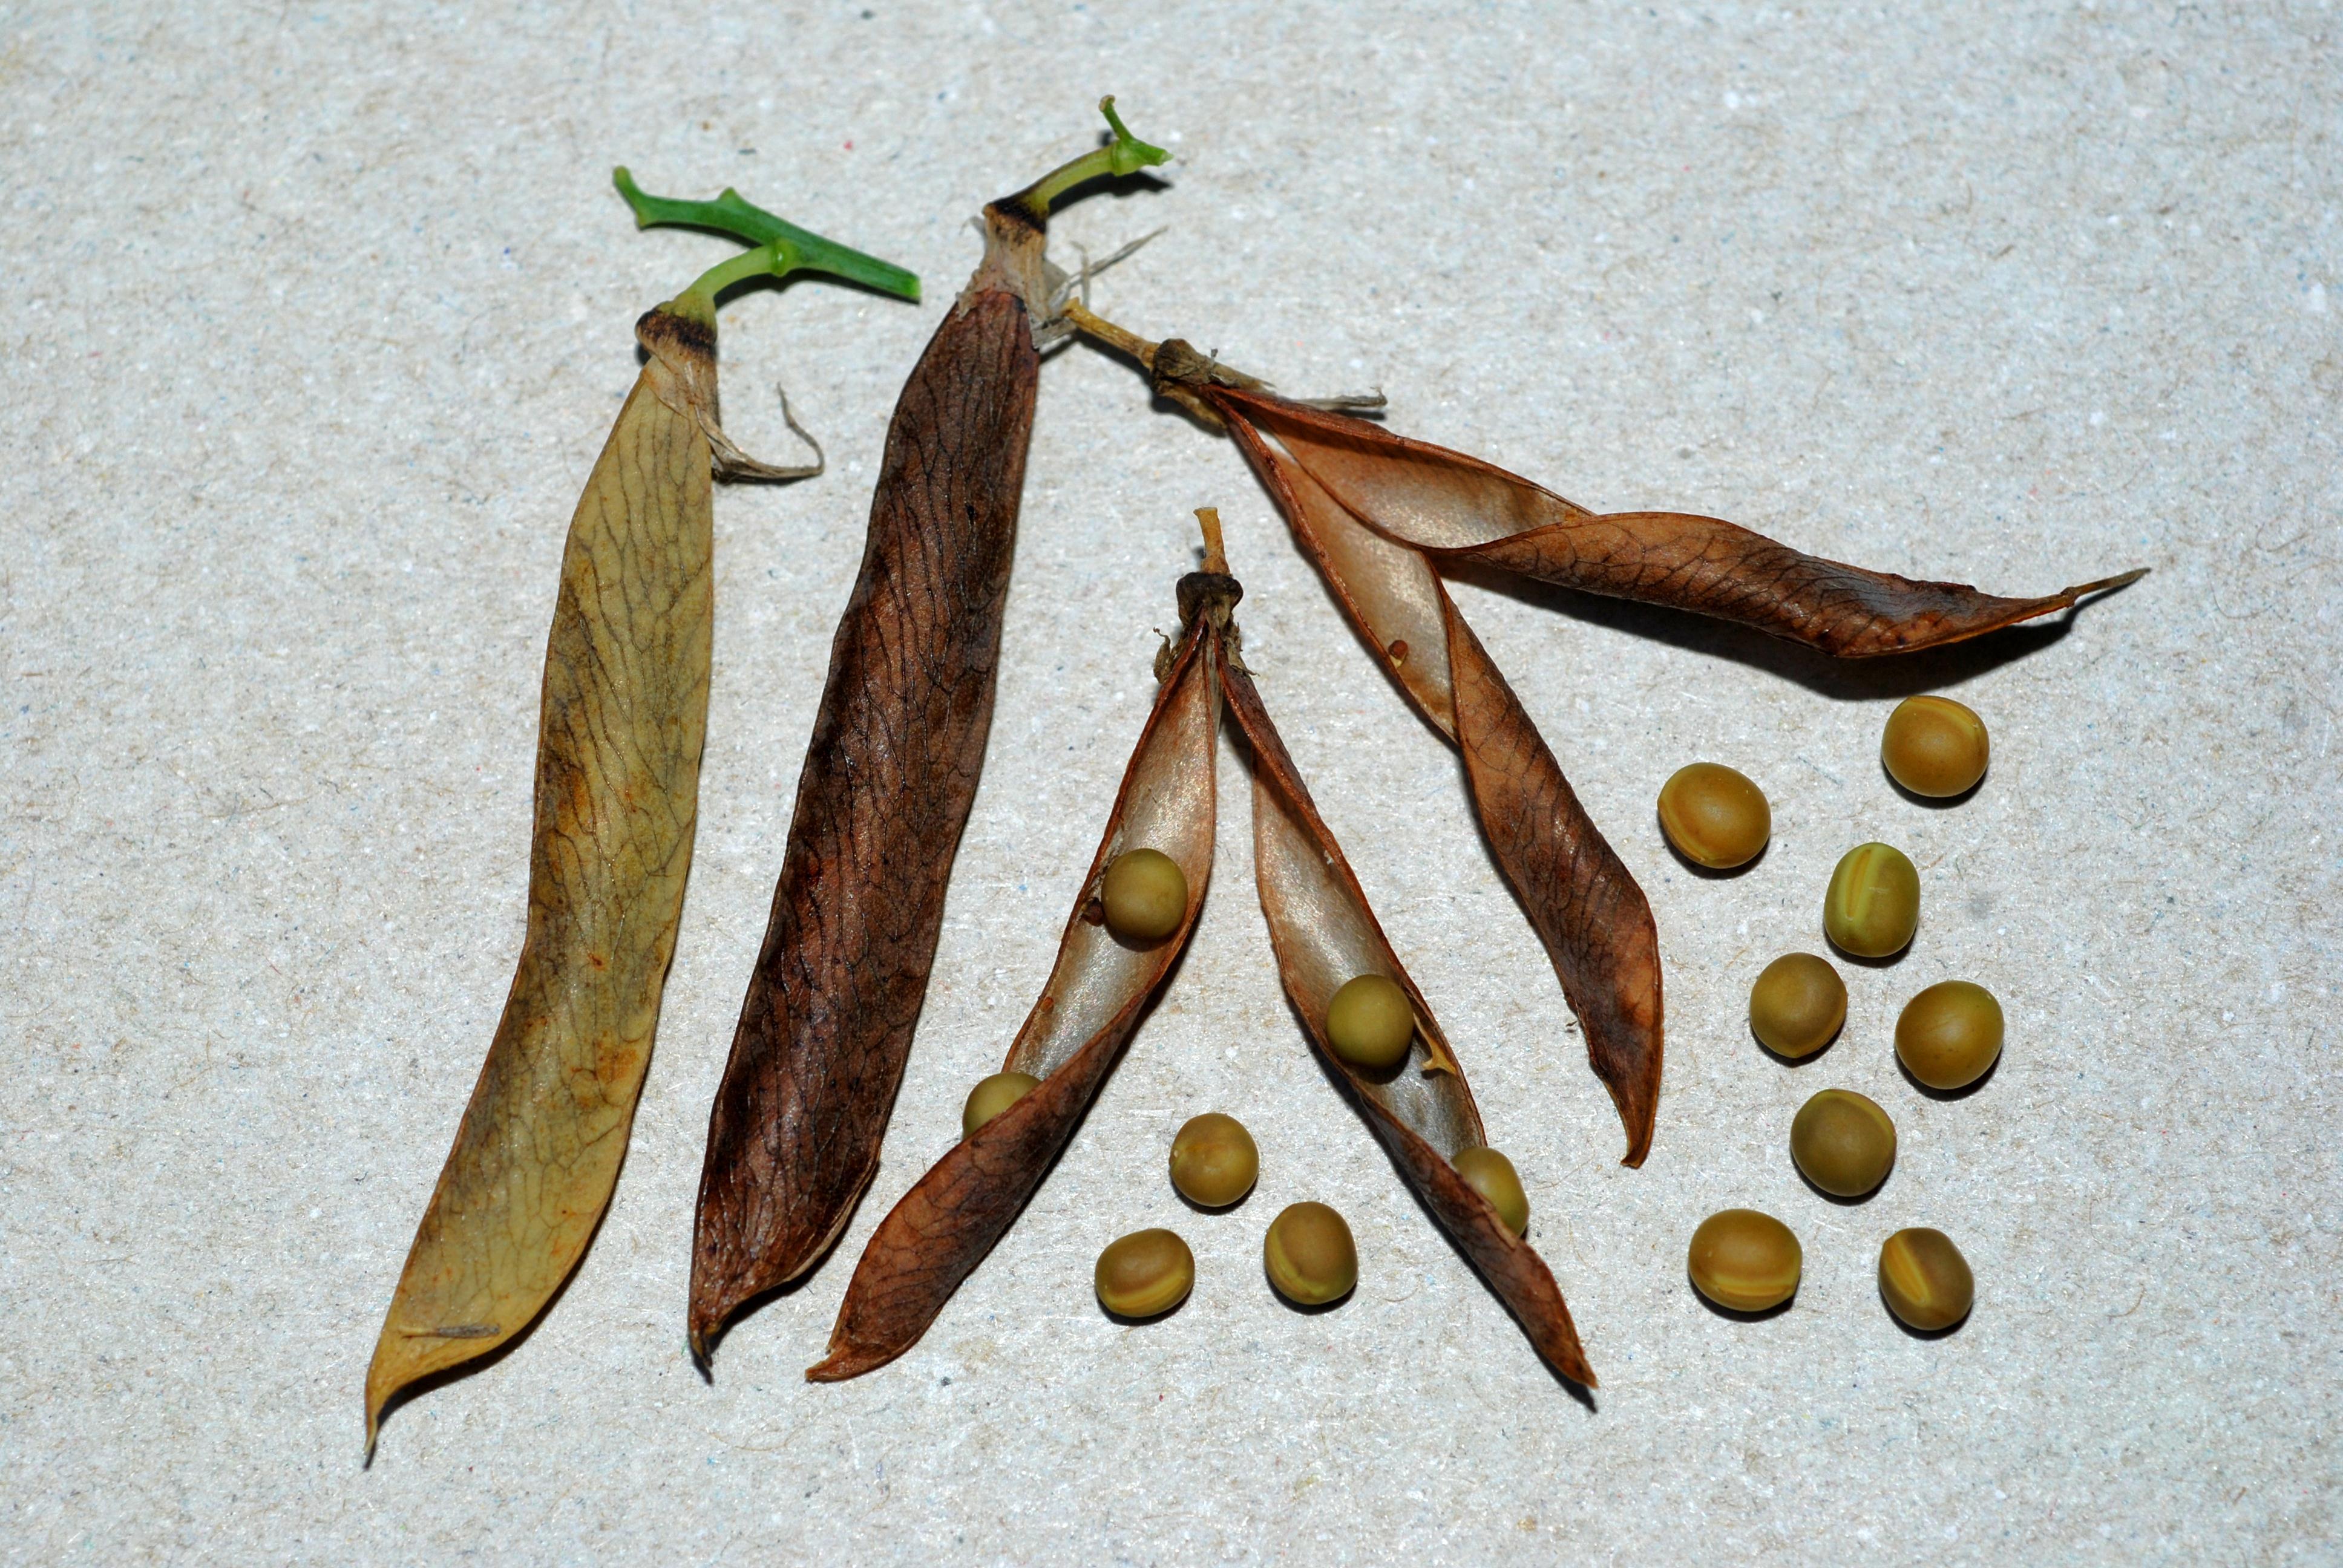 L. ochroleucus - fruits/seeds